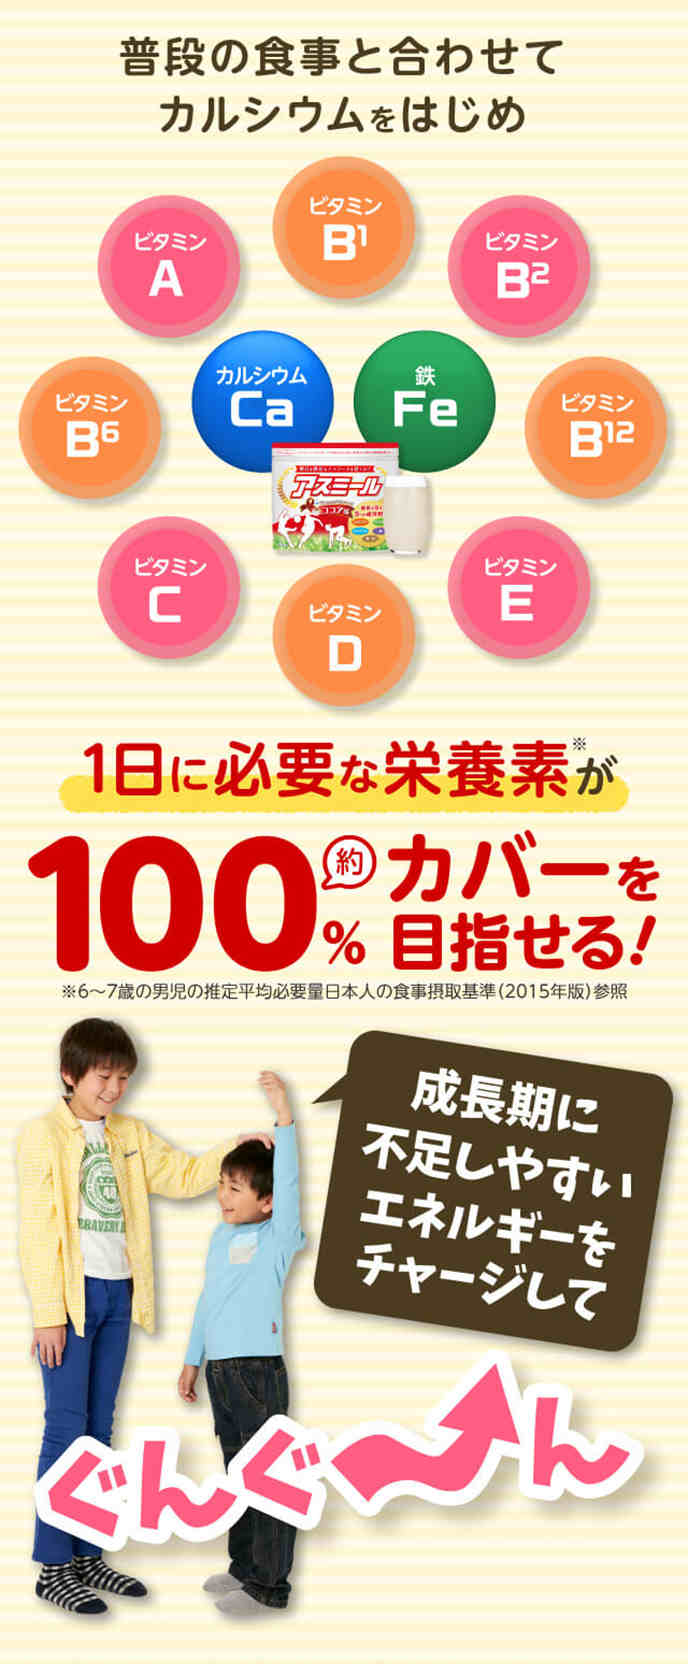 Sữa tăng chiều cao Nhật Bản - Sữa Asumiru cho trẻ từ 3 đến 16 tuổi-Japanstore_vn 08-1